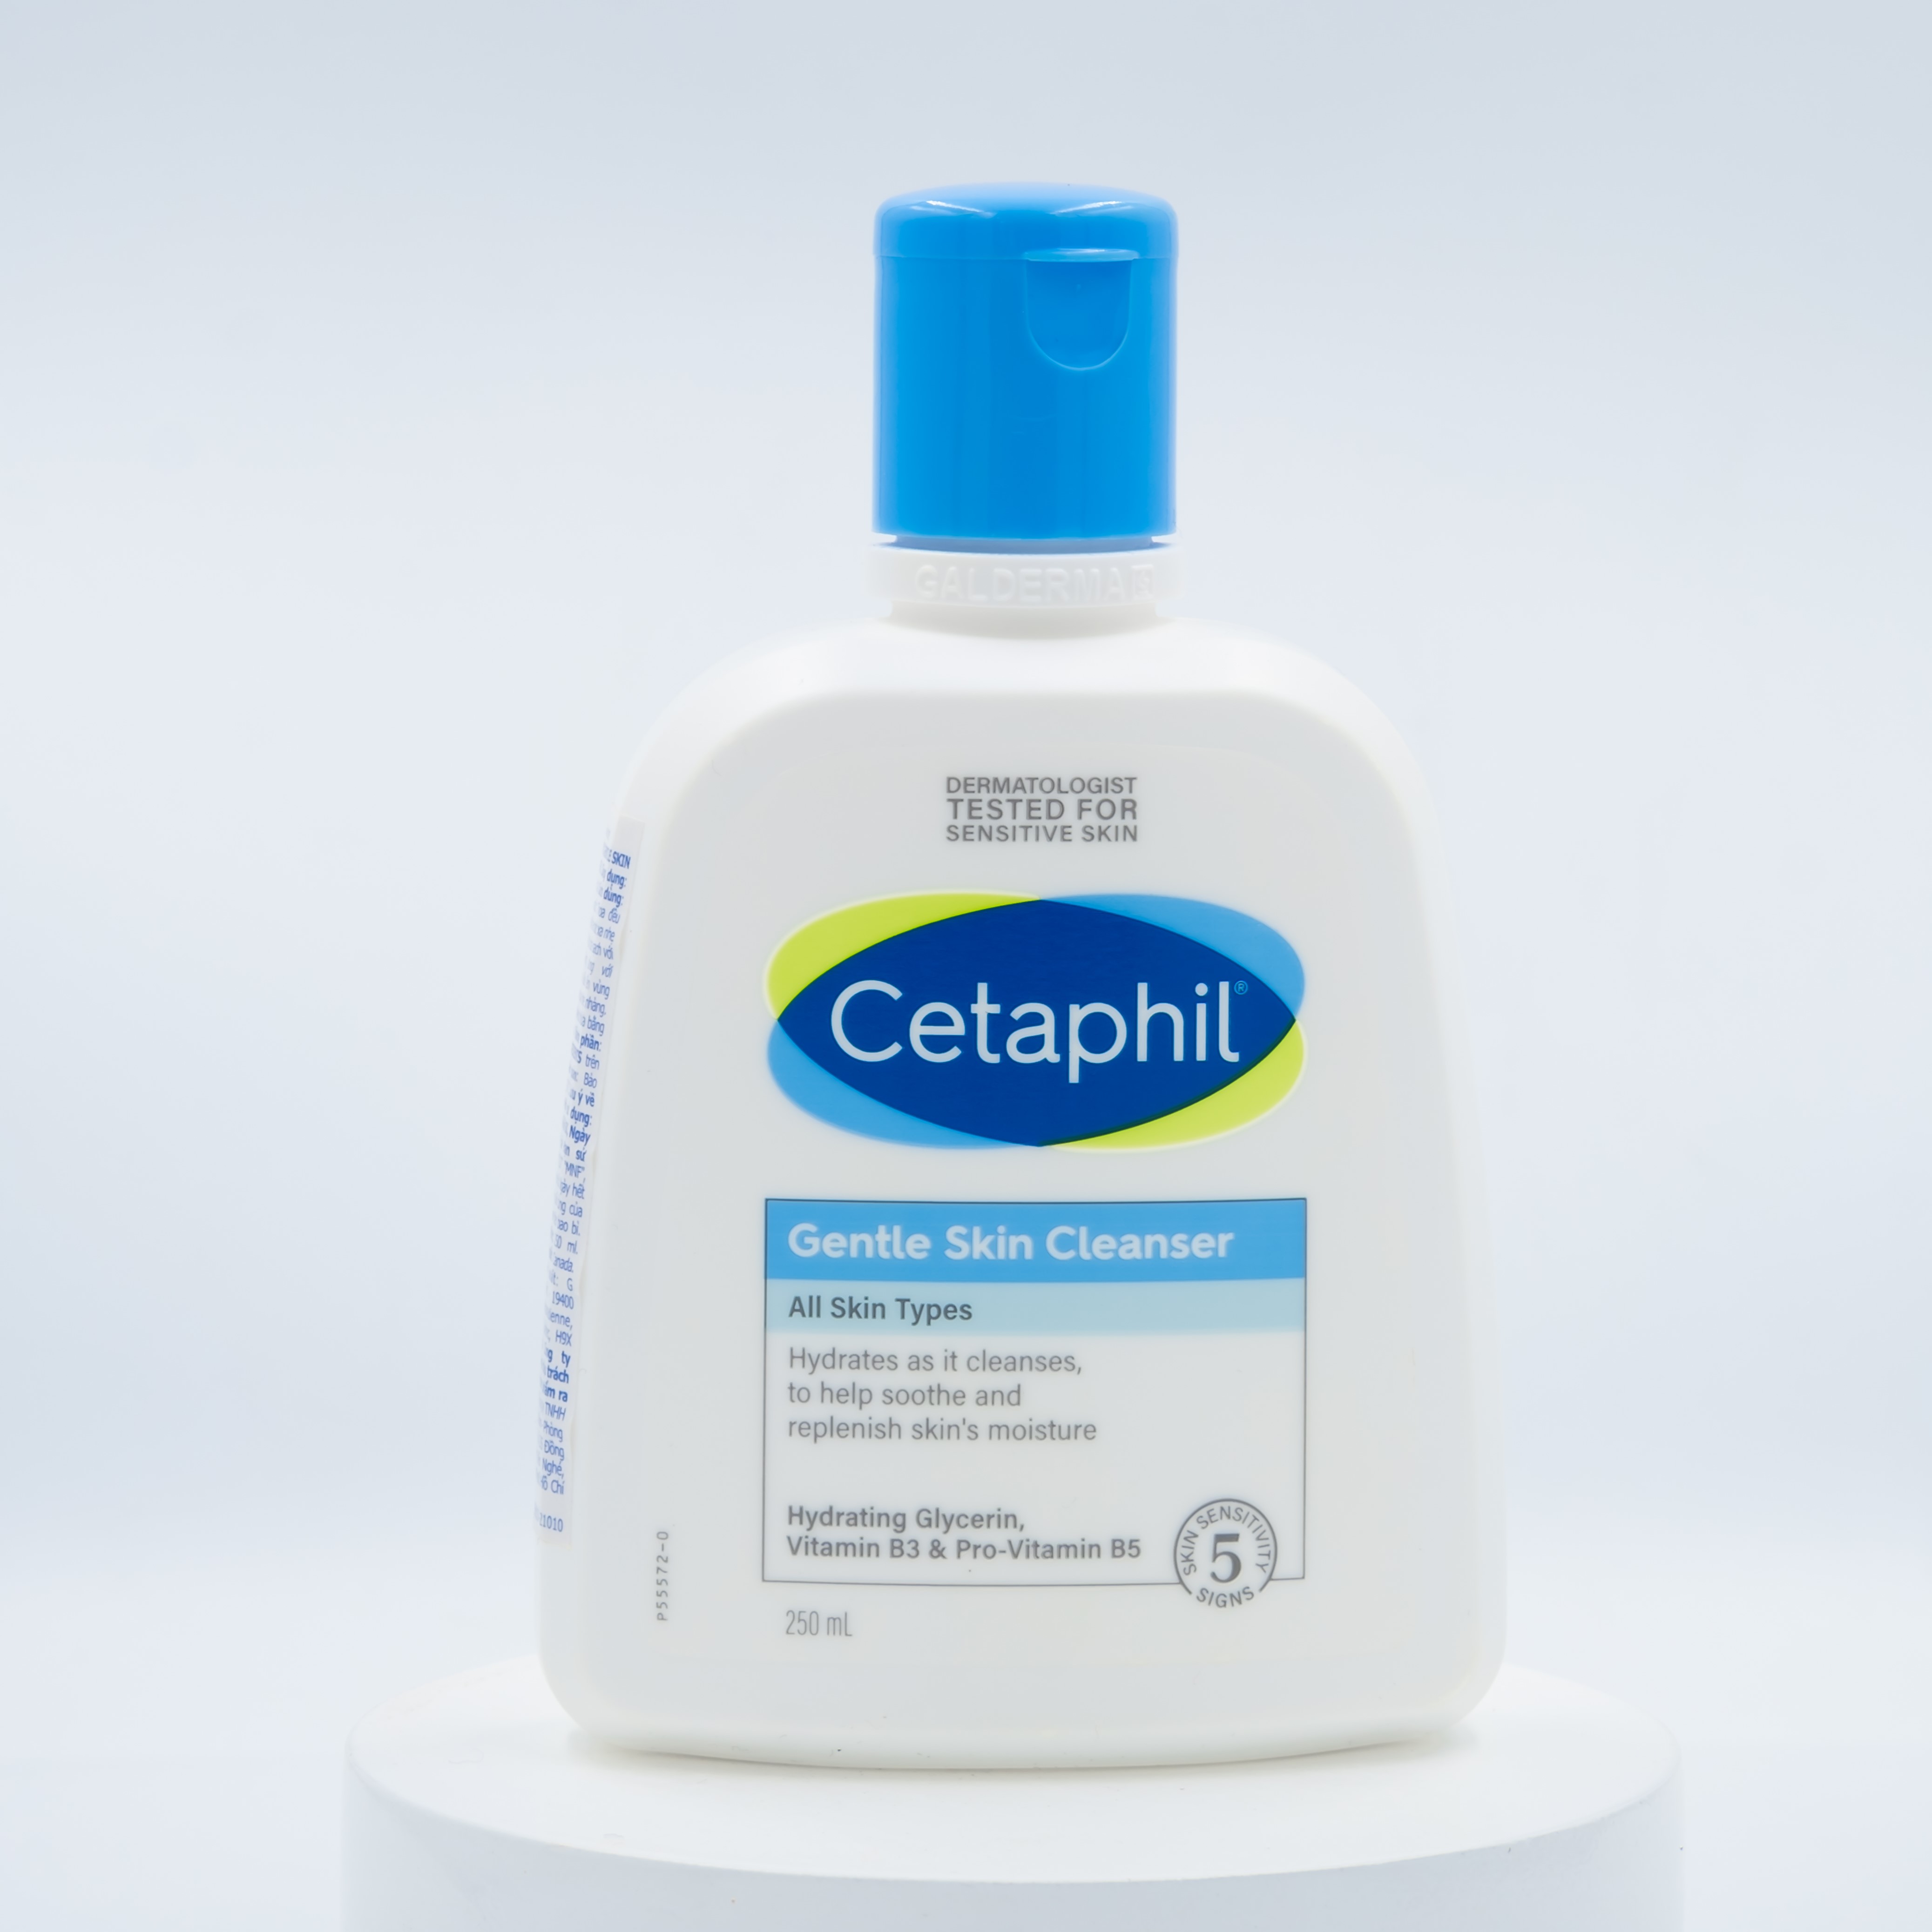 Mua ngay CETAPHIL, Sữa Rửa Mặt Cetaphil Dịu Nhẹ Gentle Skin Cleanser 250ml  với khuyến mãi đặc biệt | Watsons VN